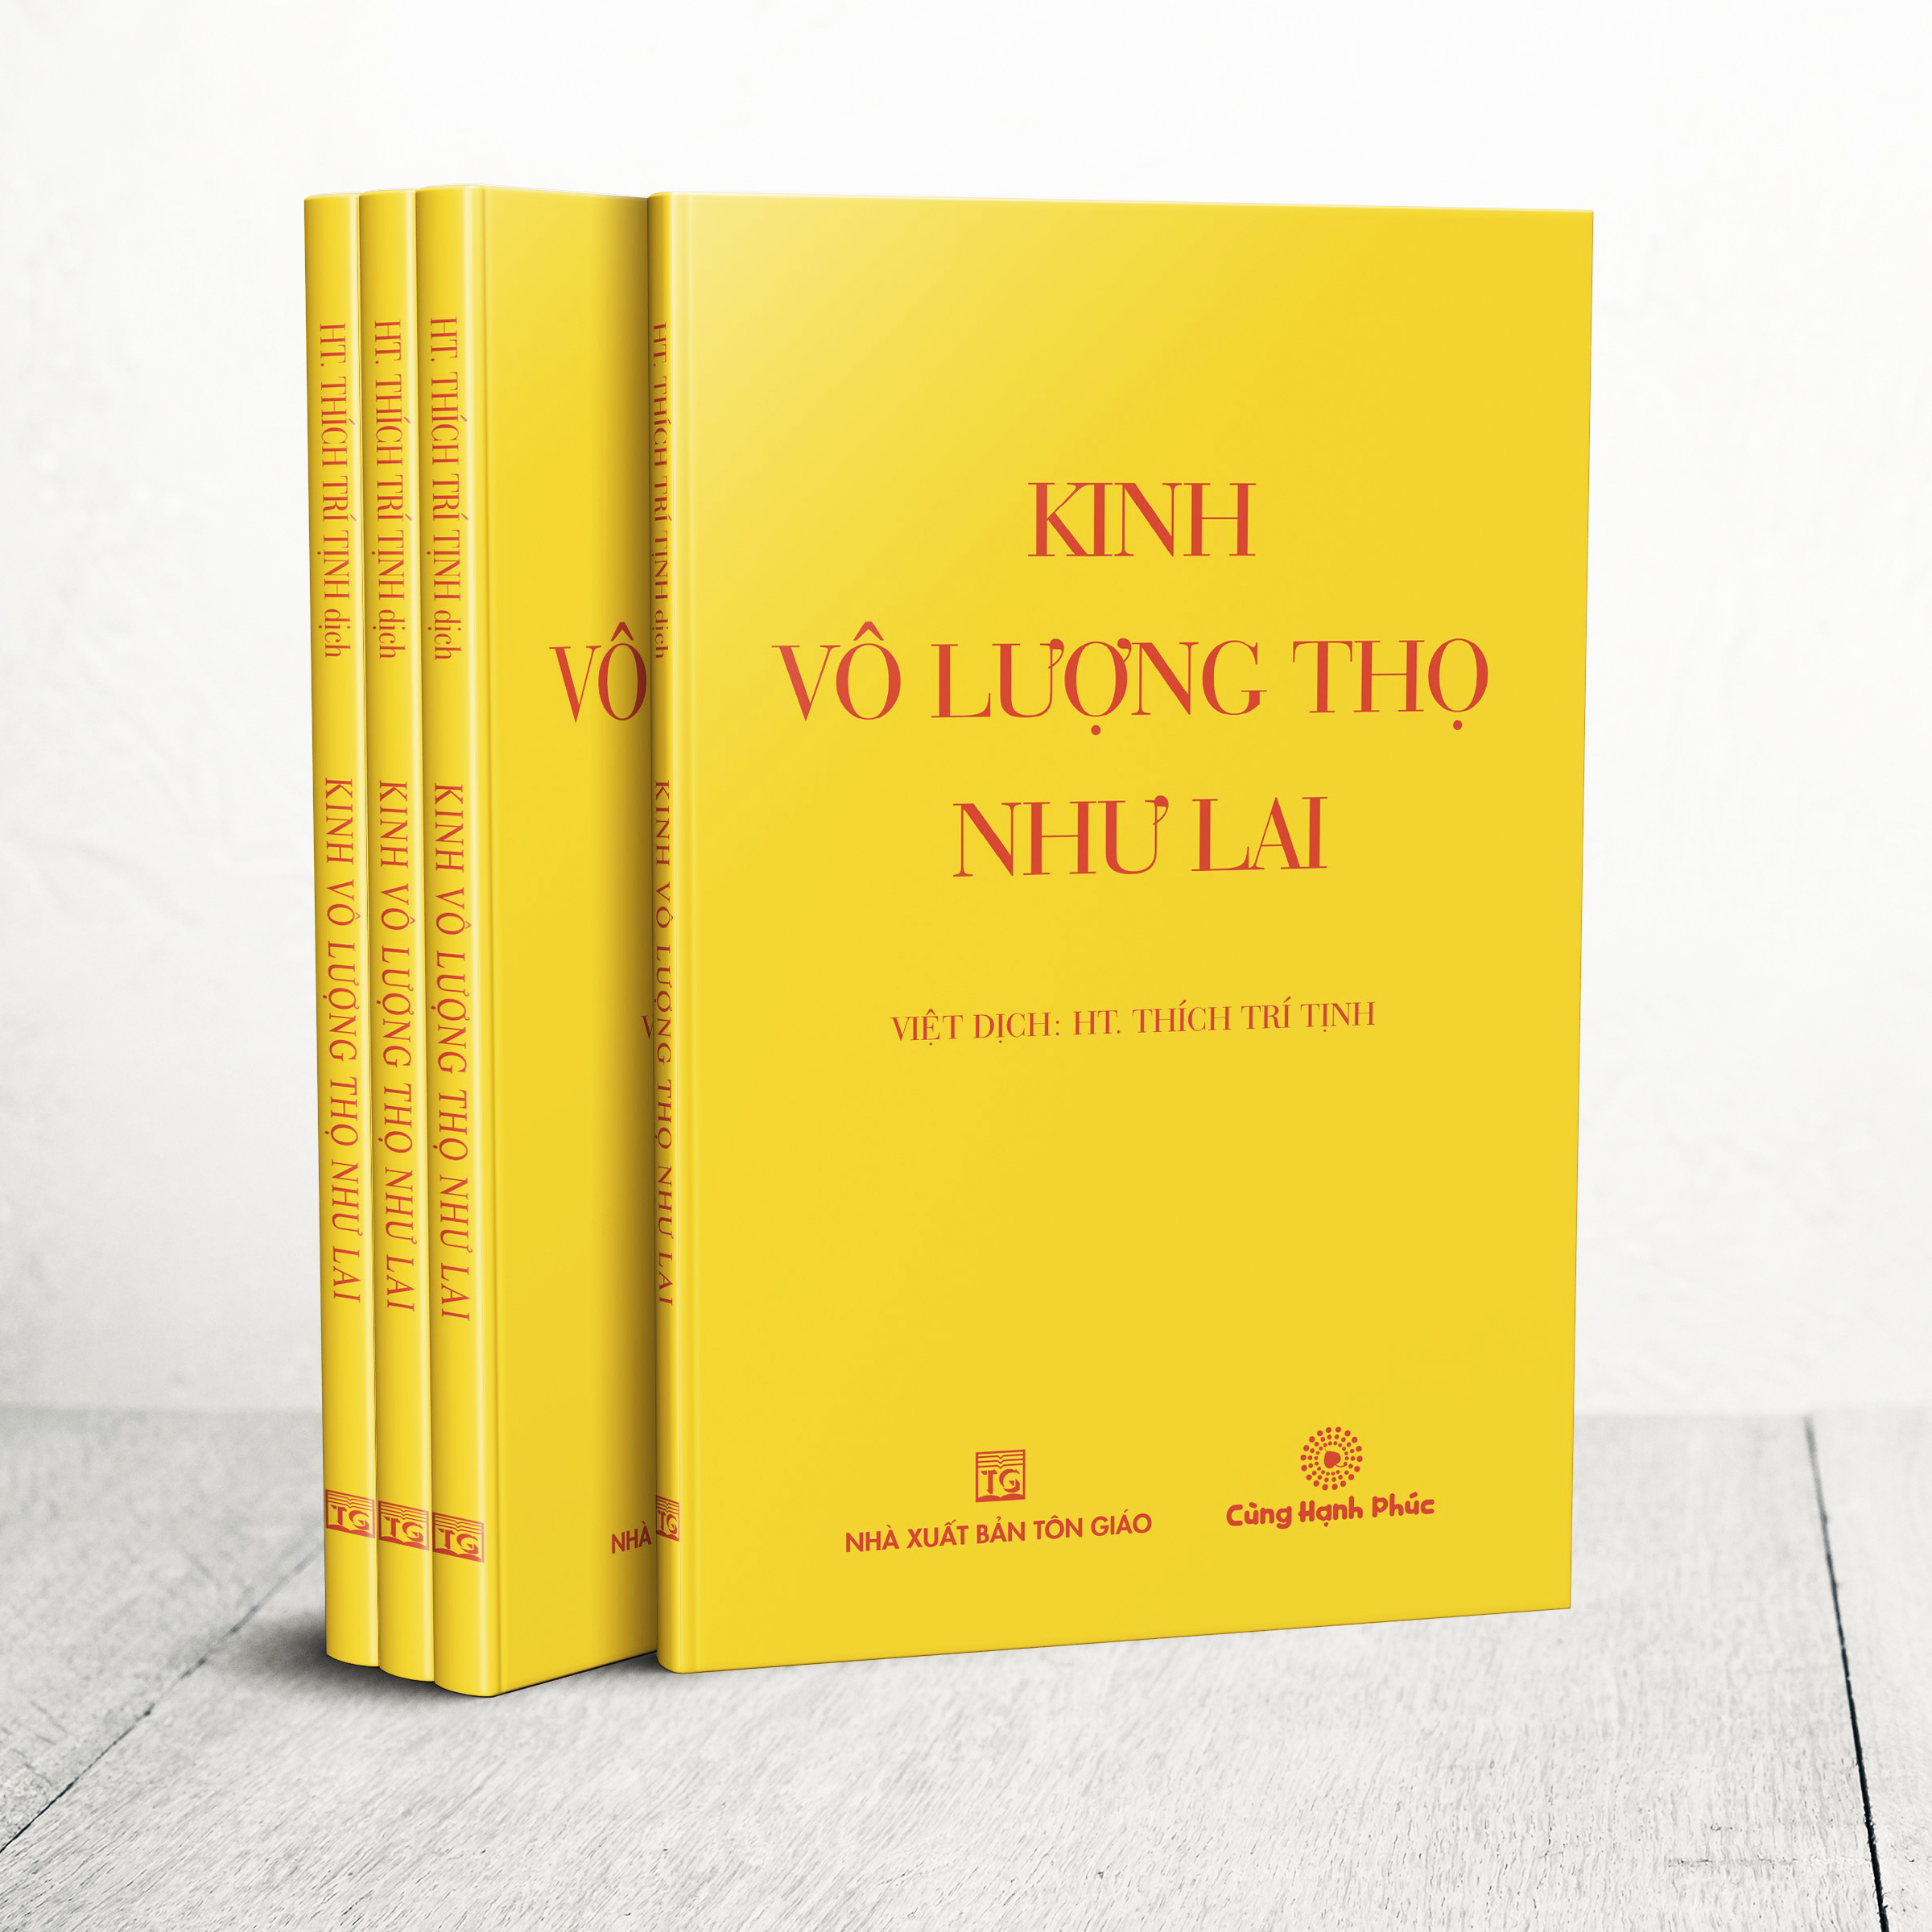 Kinh Vô Lượng Thọ Như Lai (khổ trung) - Việt dịch: Hòa thượng Thích Trí Tịnh